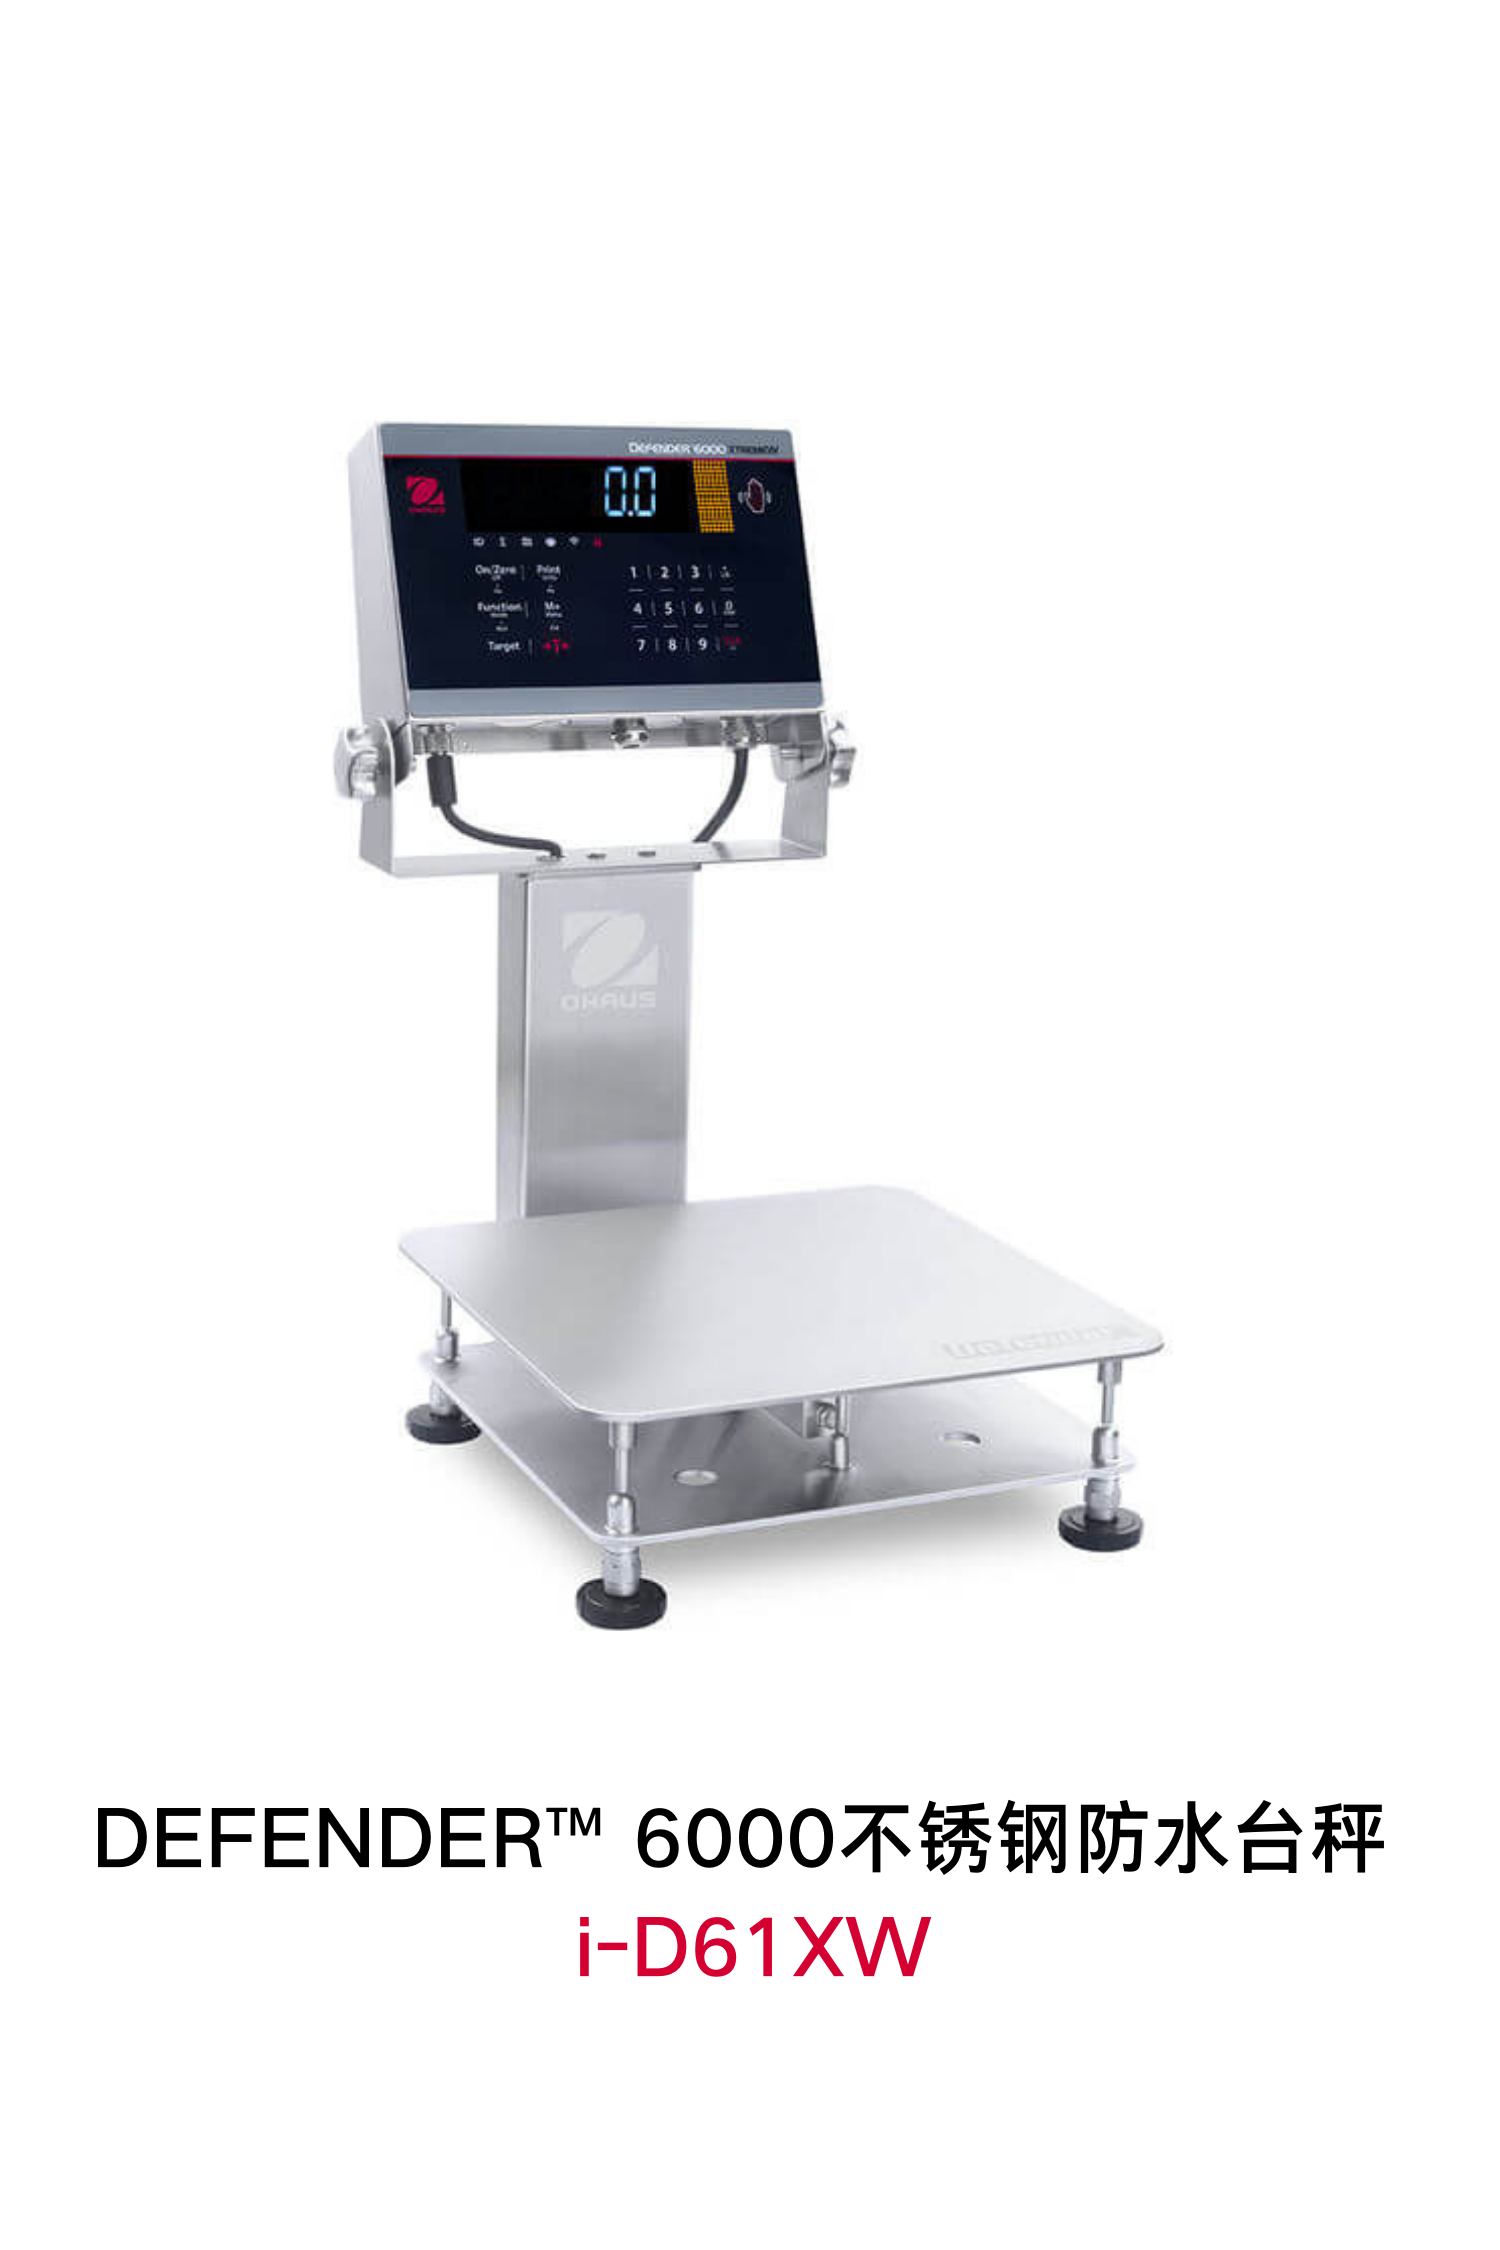 DEFENDER-6000-I-D61XW-不锈钢防水台秤-(2).png